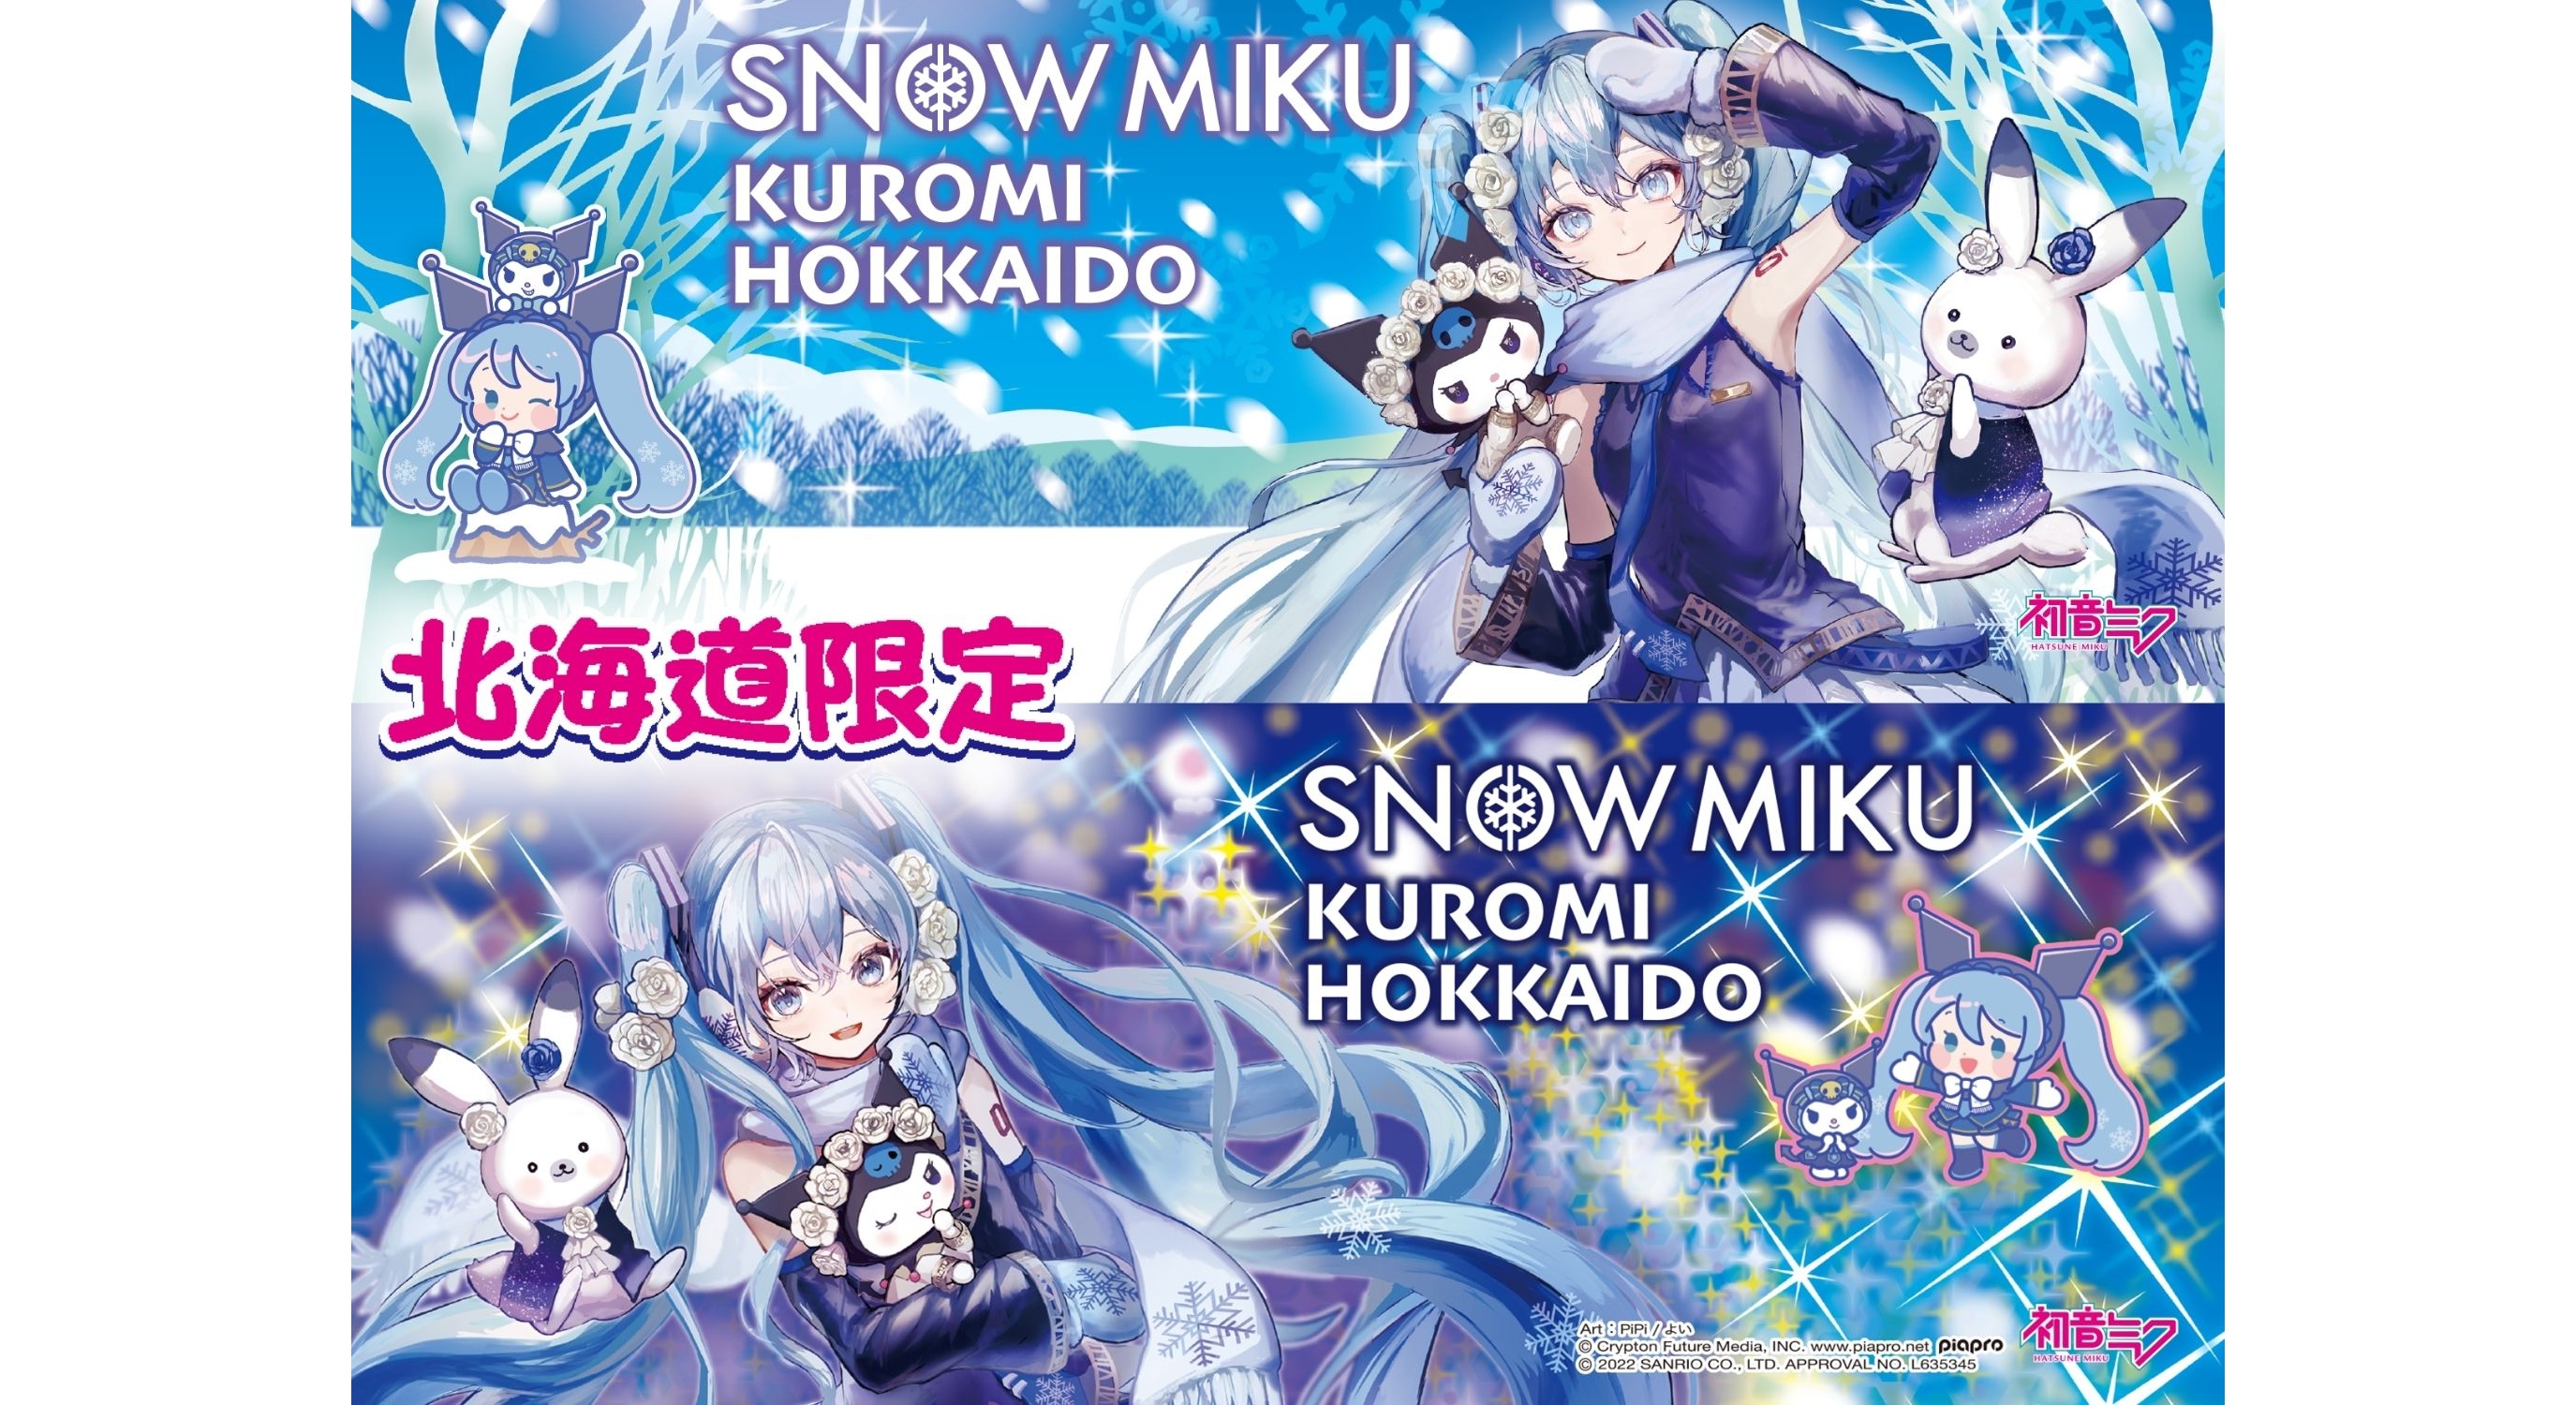 snow-mikuxkuromi-hokkaido1